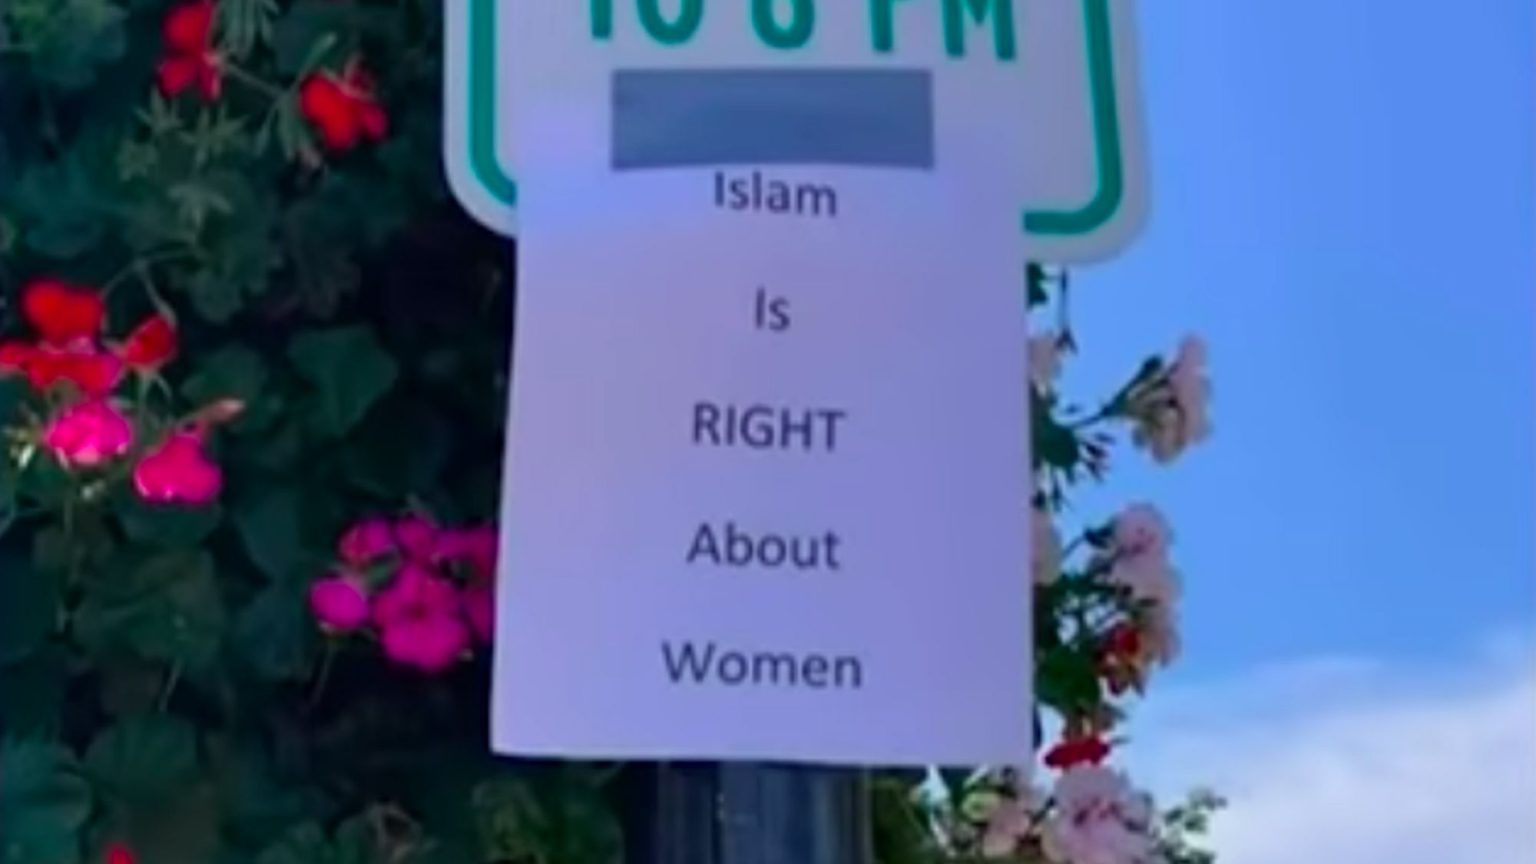 islam_women-1536x864.jpg